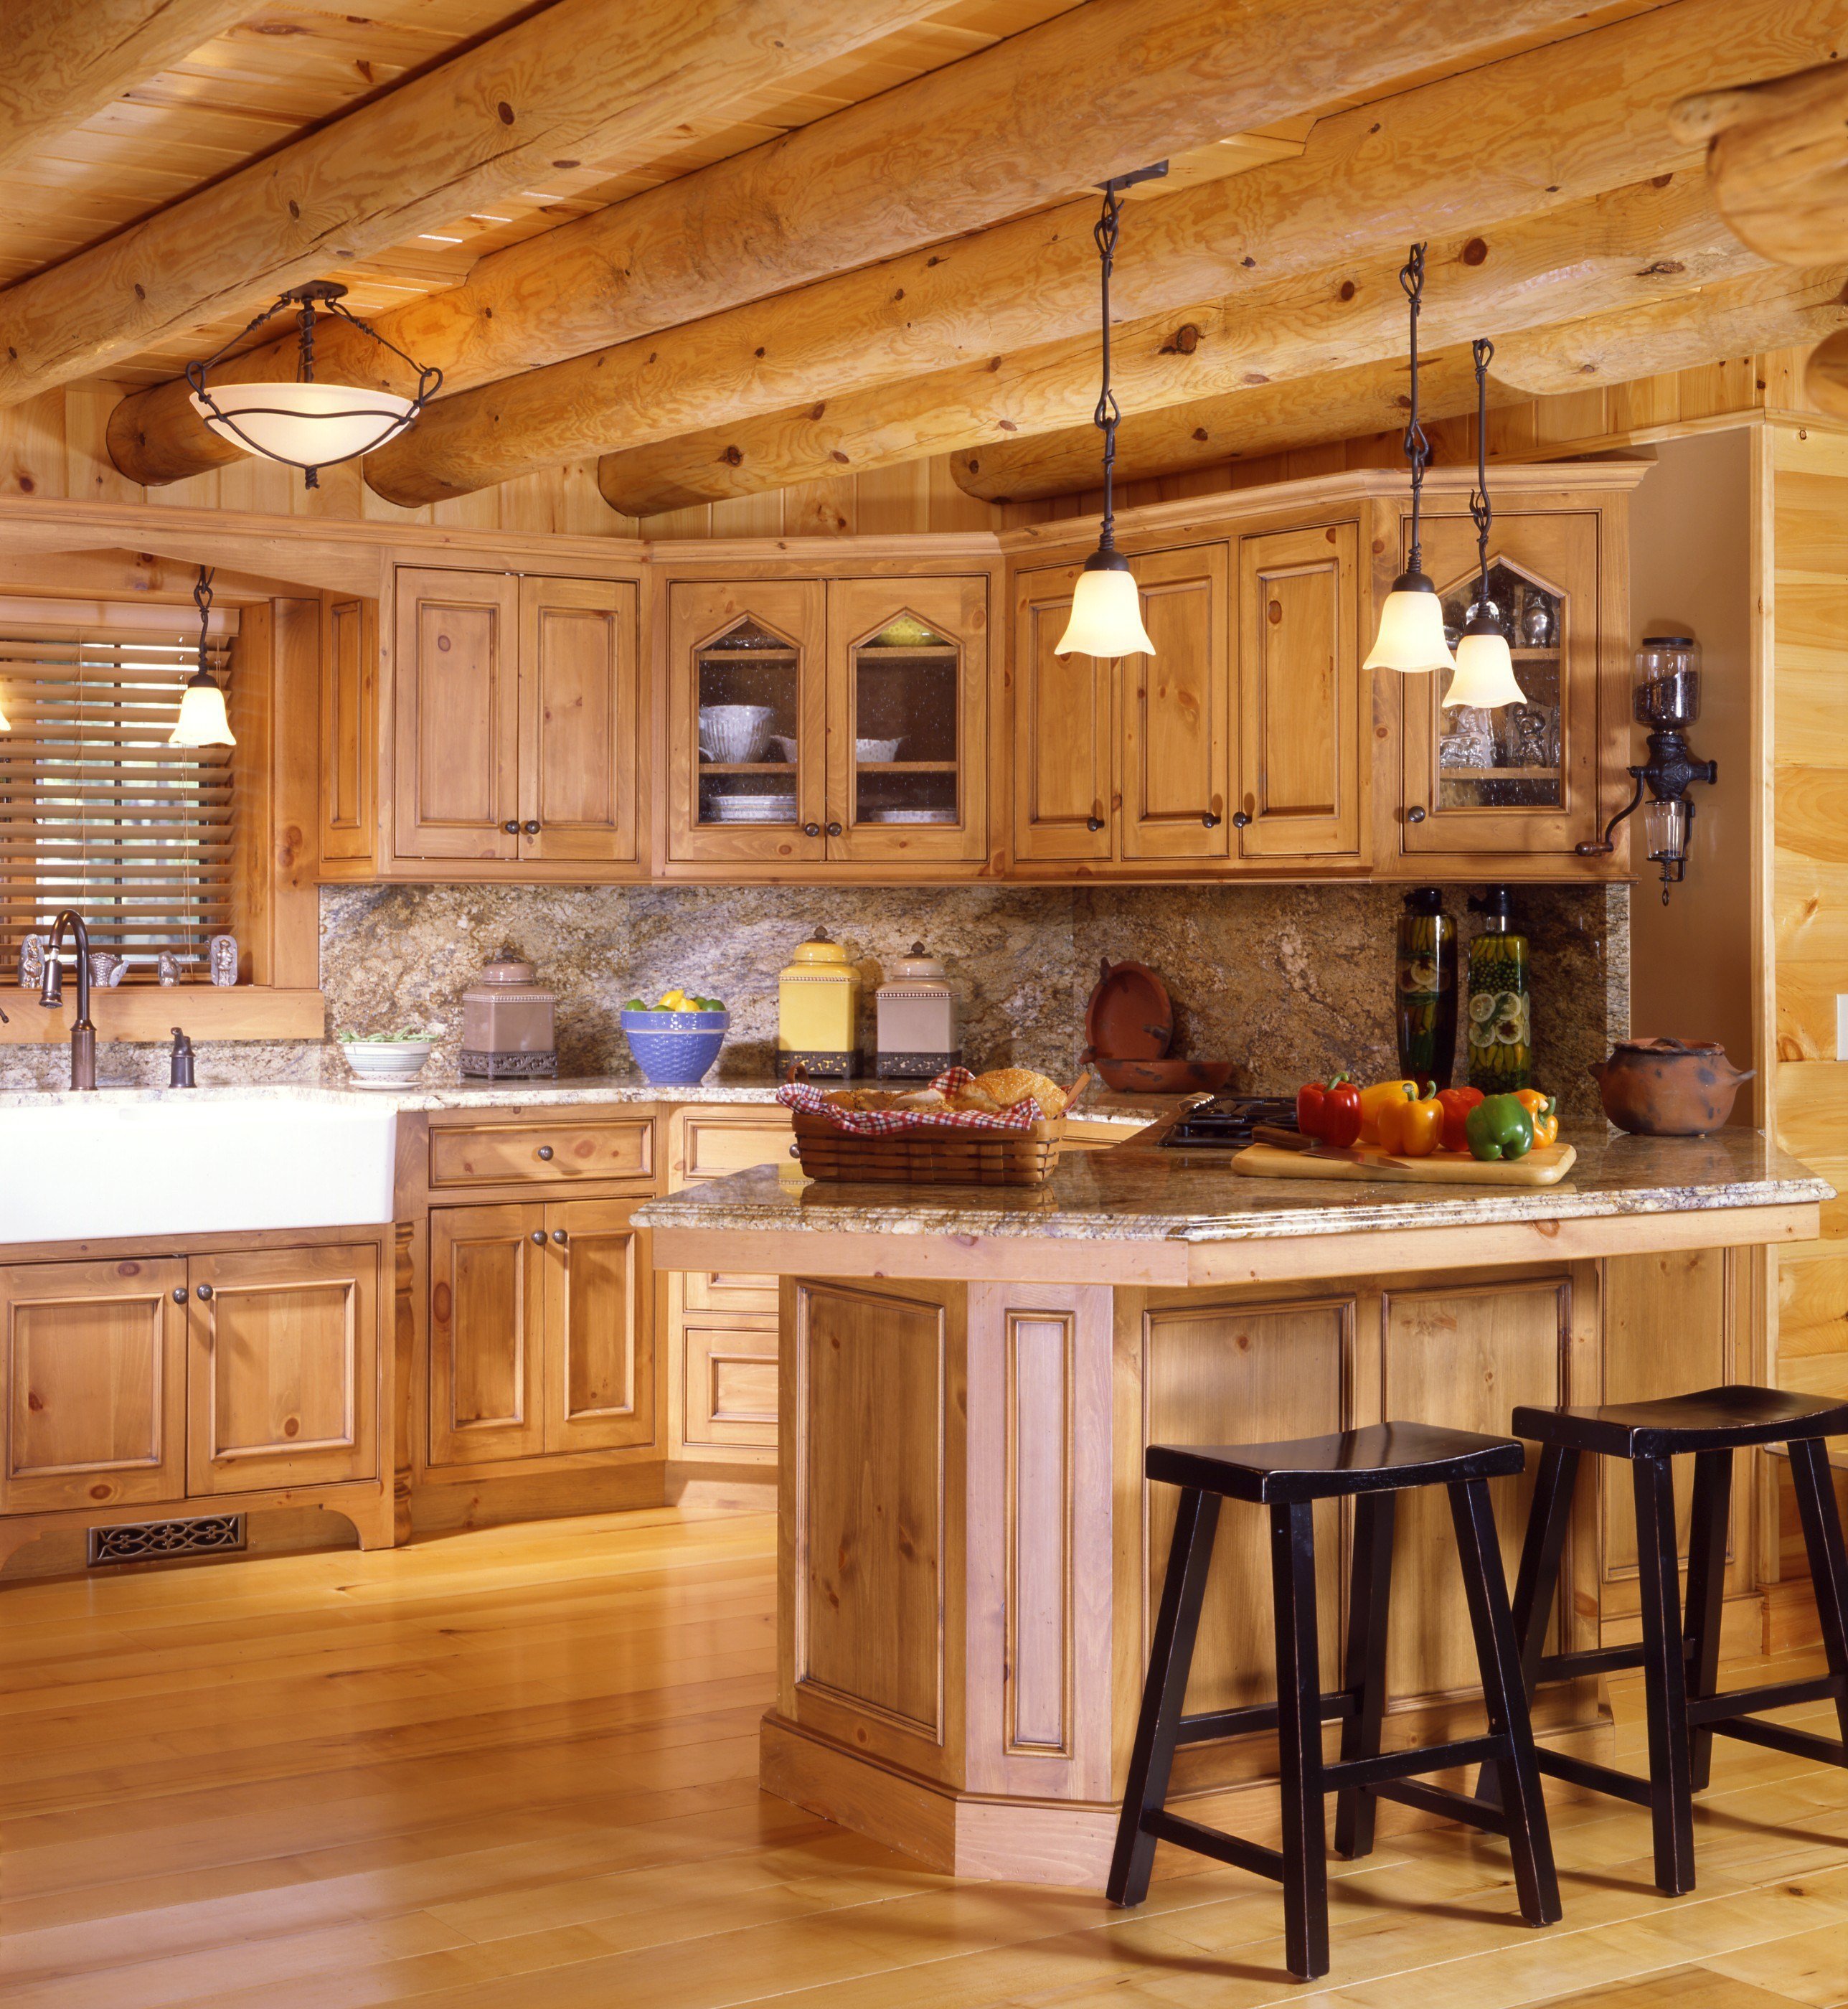 Рубленные кухни. Кухня в деревянном доме. Кухни в деревянноммдоме. Кухня в деревянном стиле. Красивая кухня в деревянном доме.